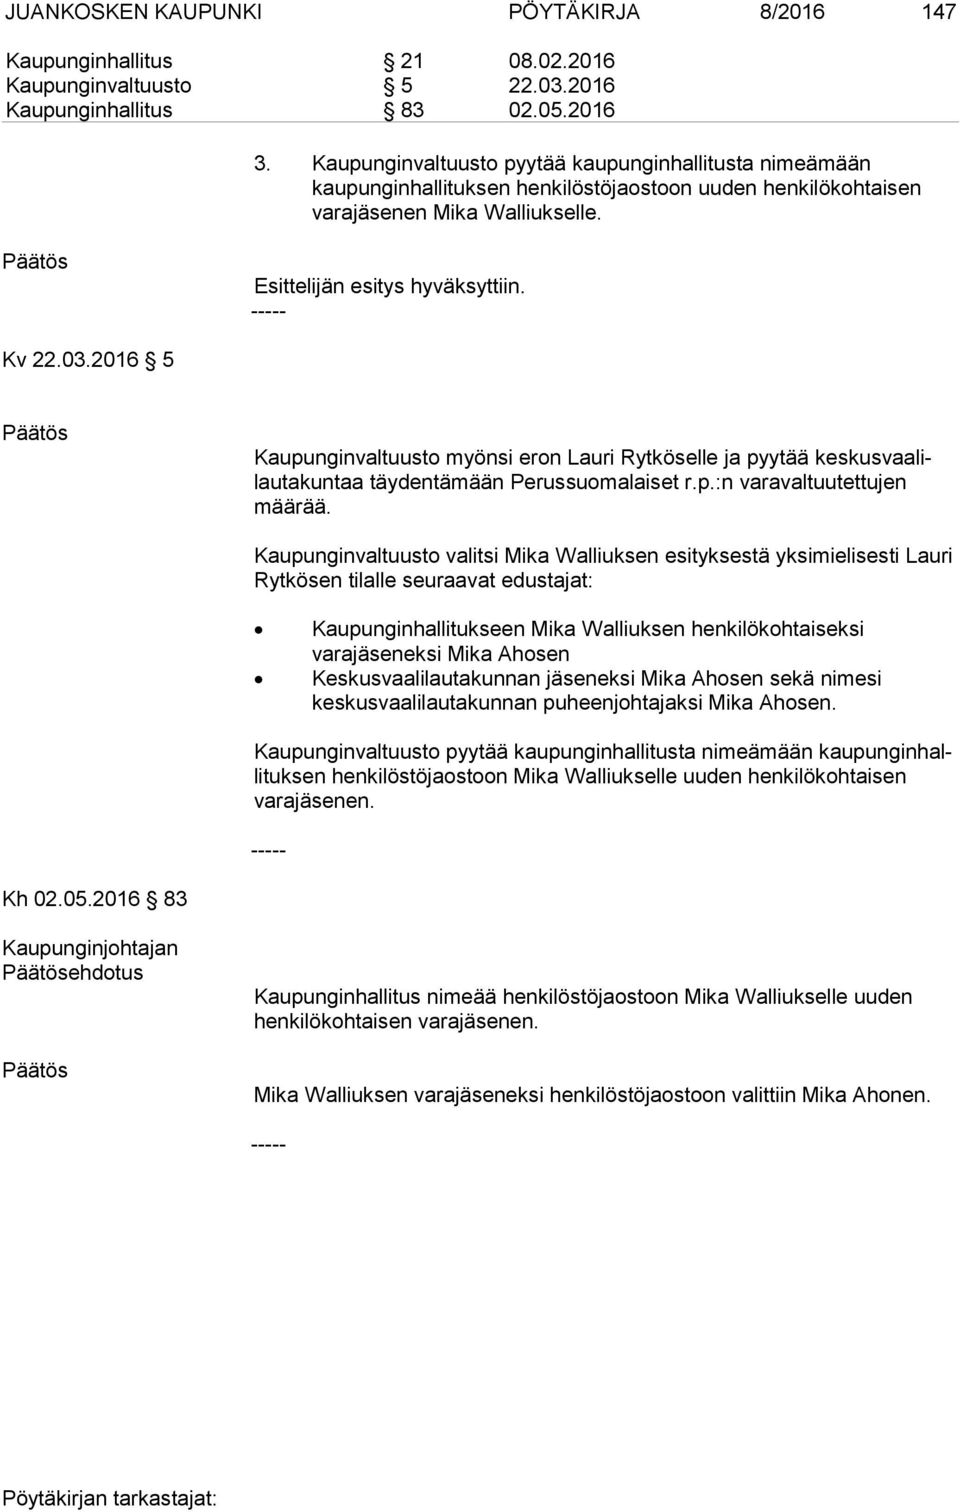 2016 5 Kaupunginvaltuusto myönsi eron Lauri Rytköselle ja pyytää kes kus vaa lilau ta kun taa täydentämään Perussuomalaiset r.p.:n varavaltuutettujen mää rää.